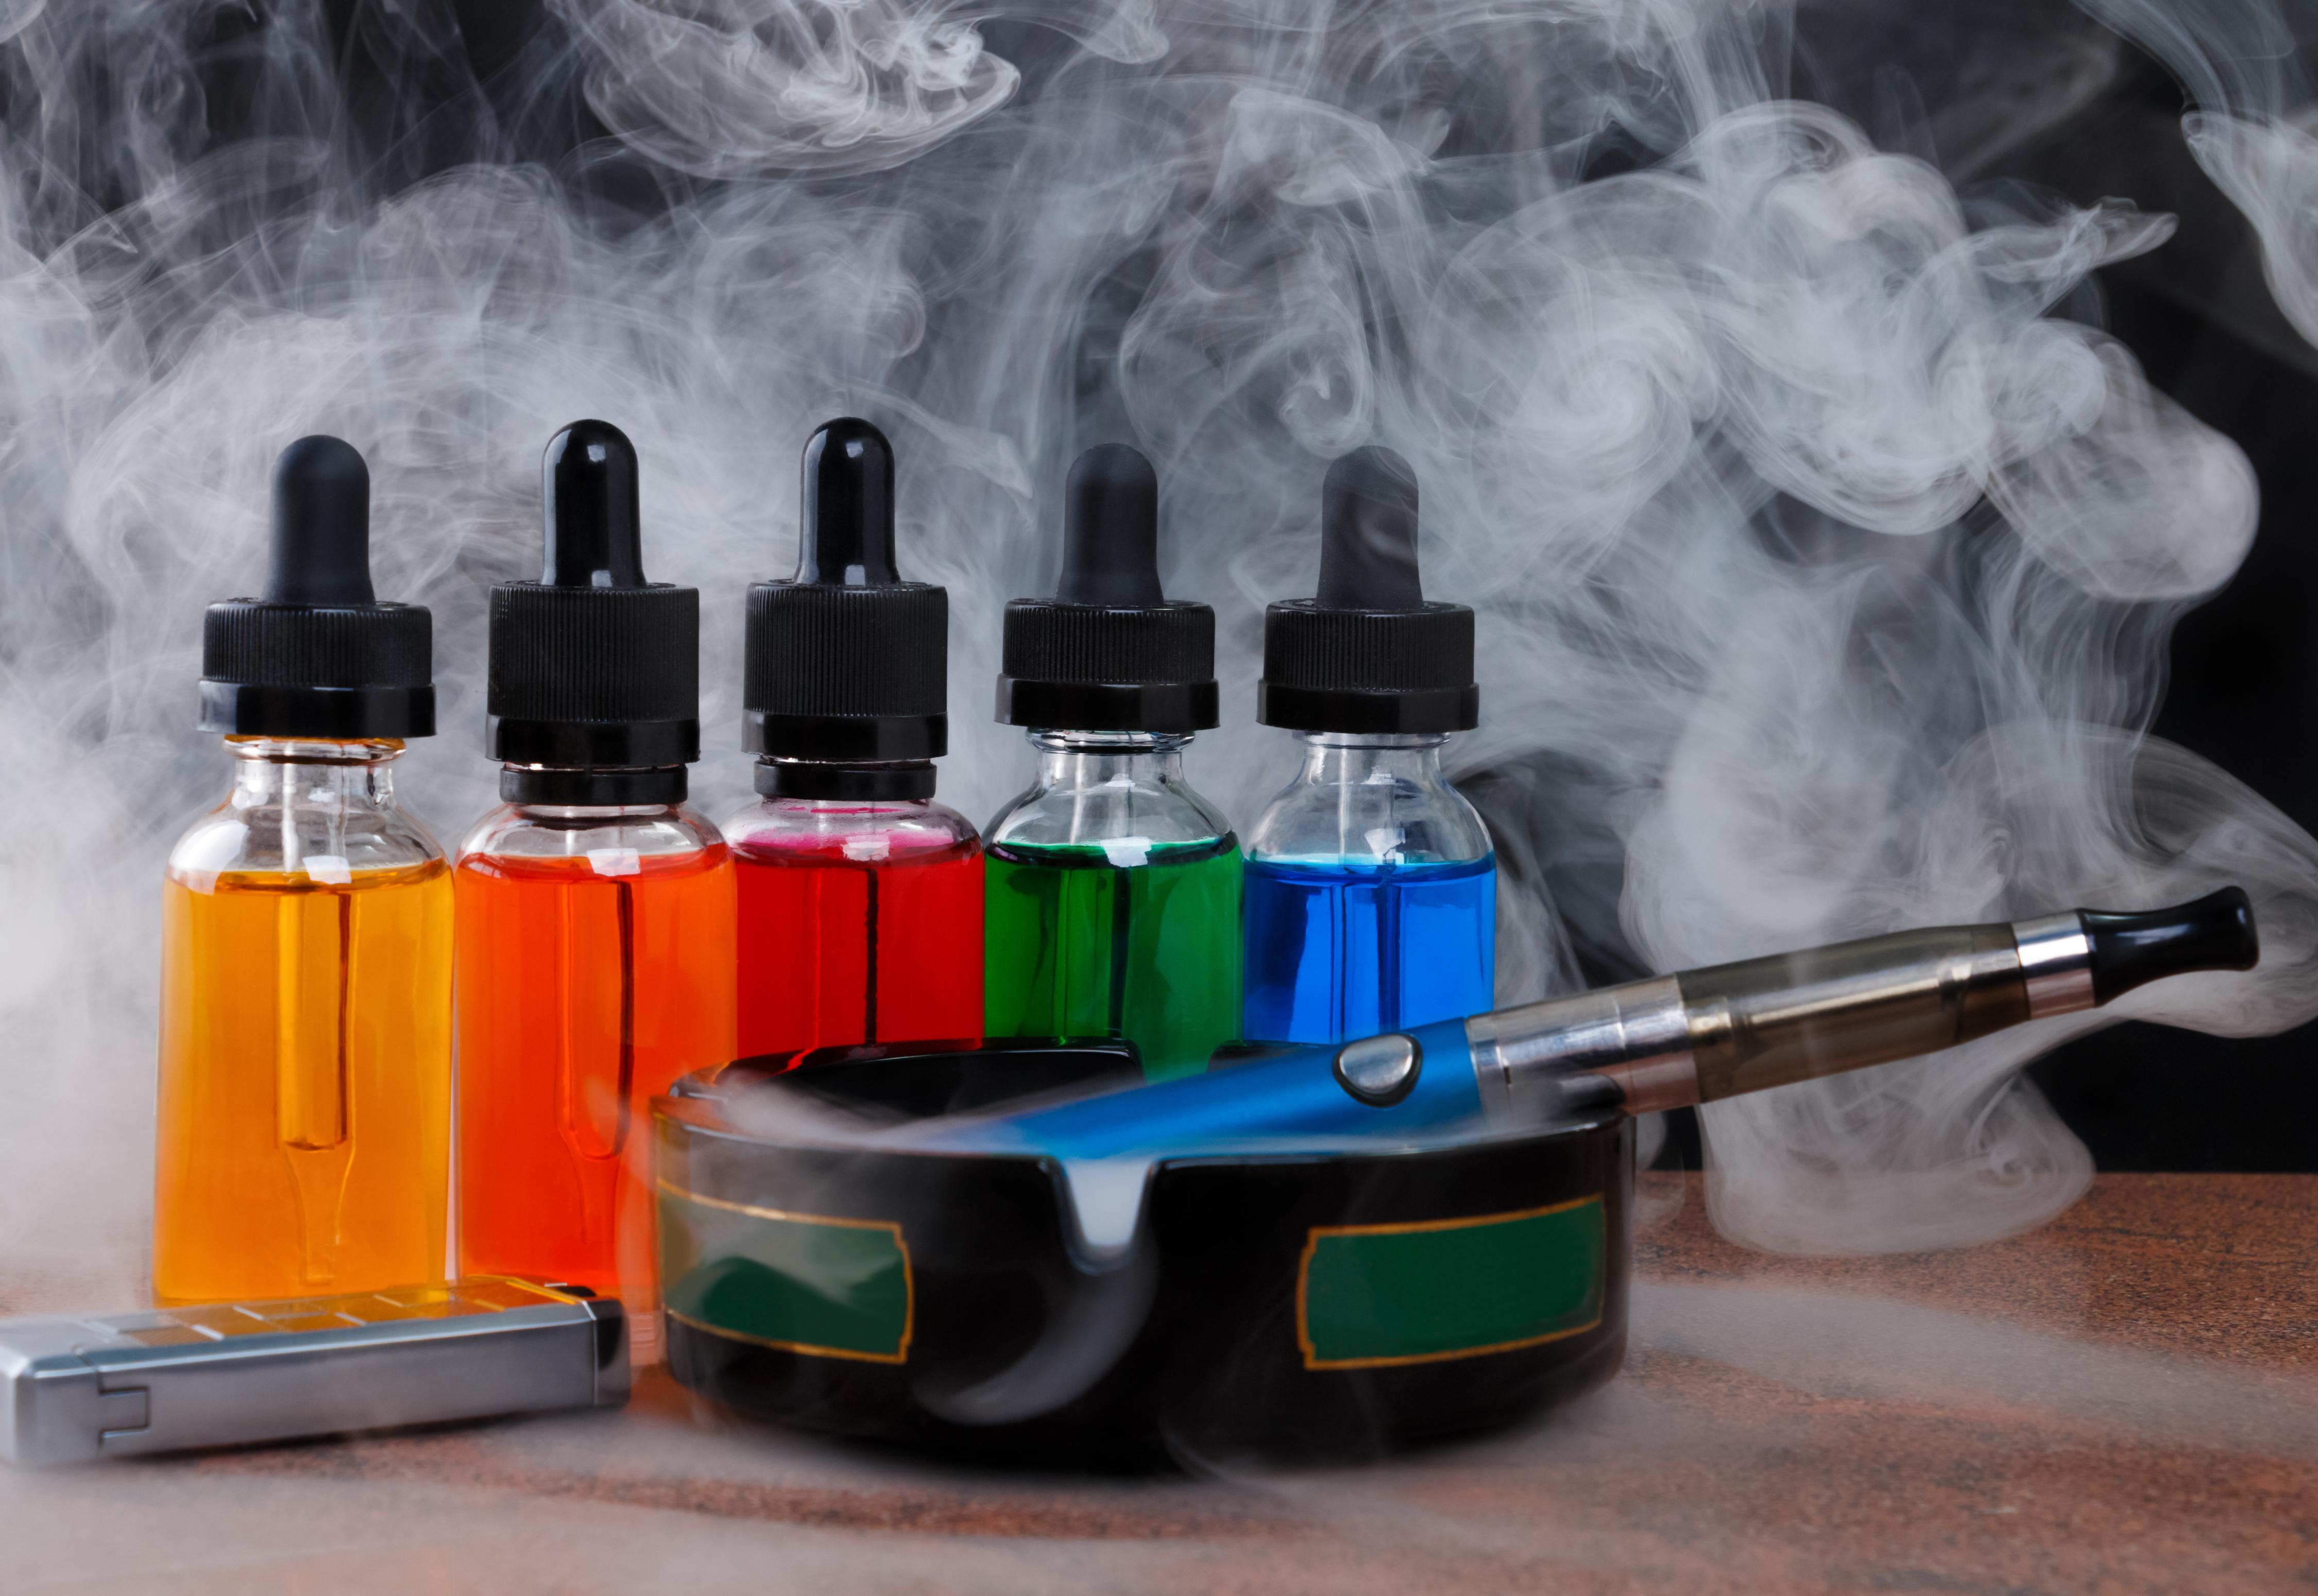 L'e-cigarette et sa panoplie d'arômes, un danger ?